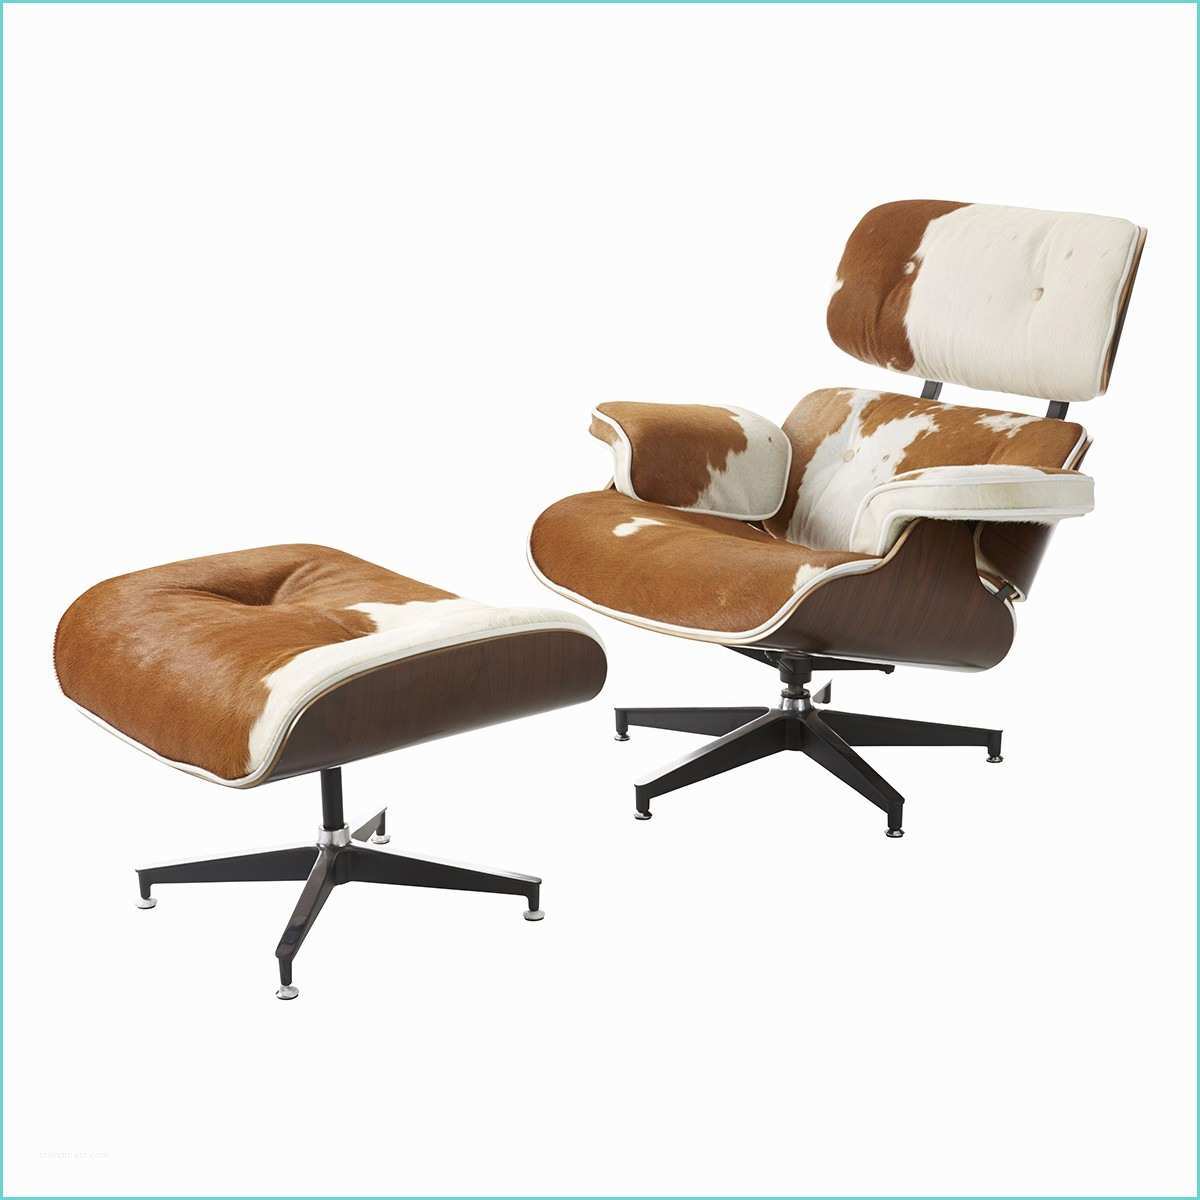 Eames Chair Replica Replica Eames Lounge Chair and Ottoman Black Eames Chair